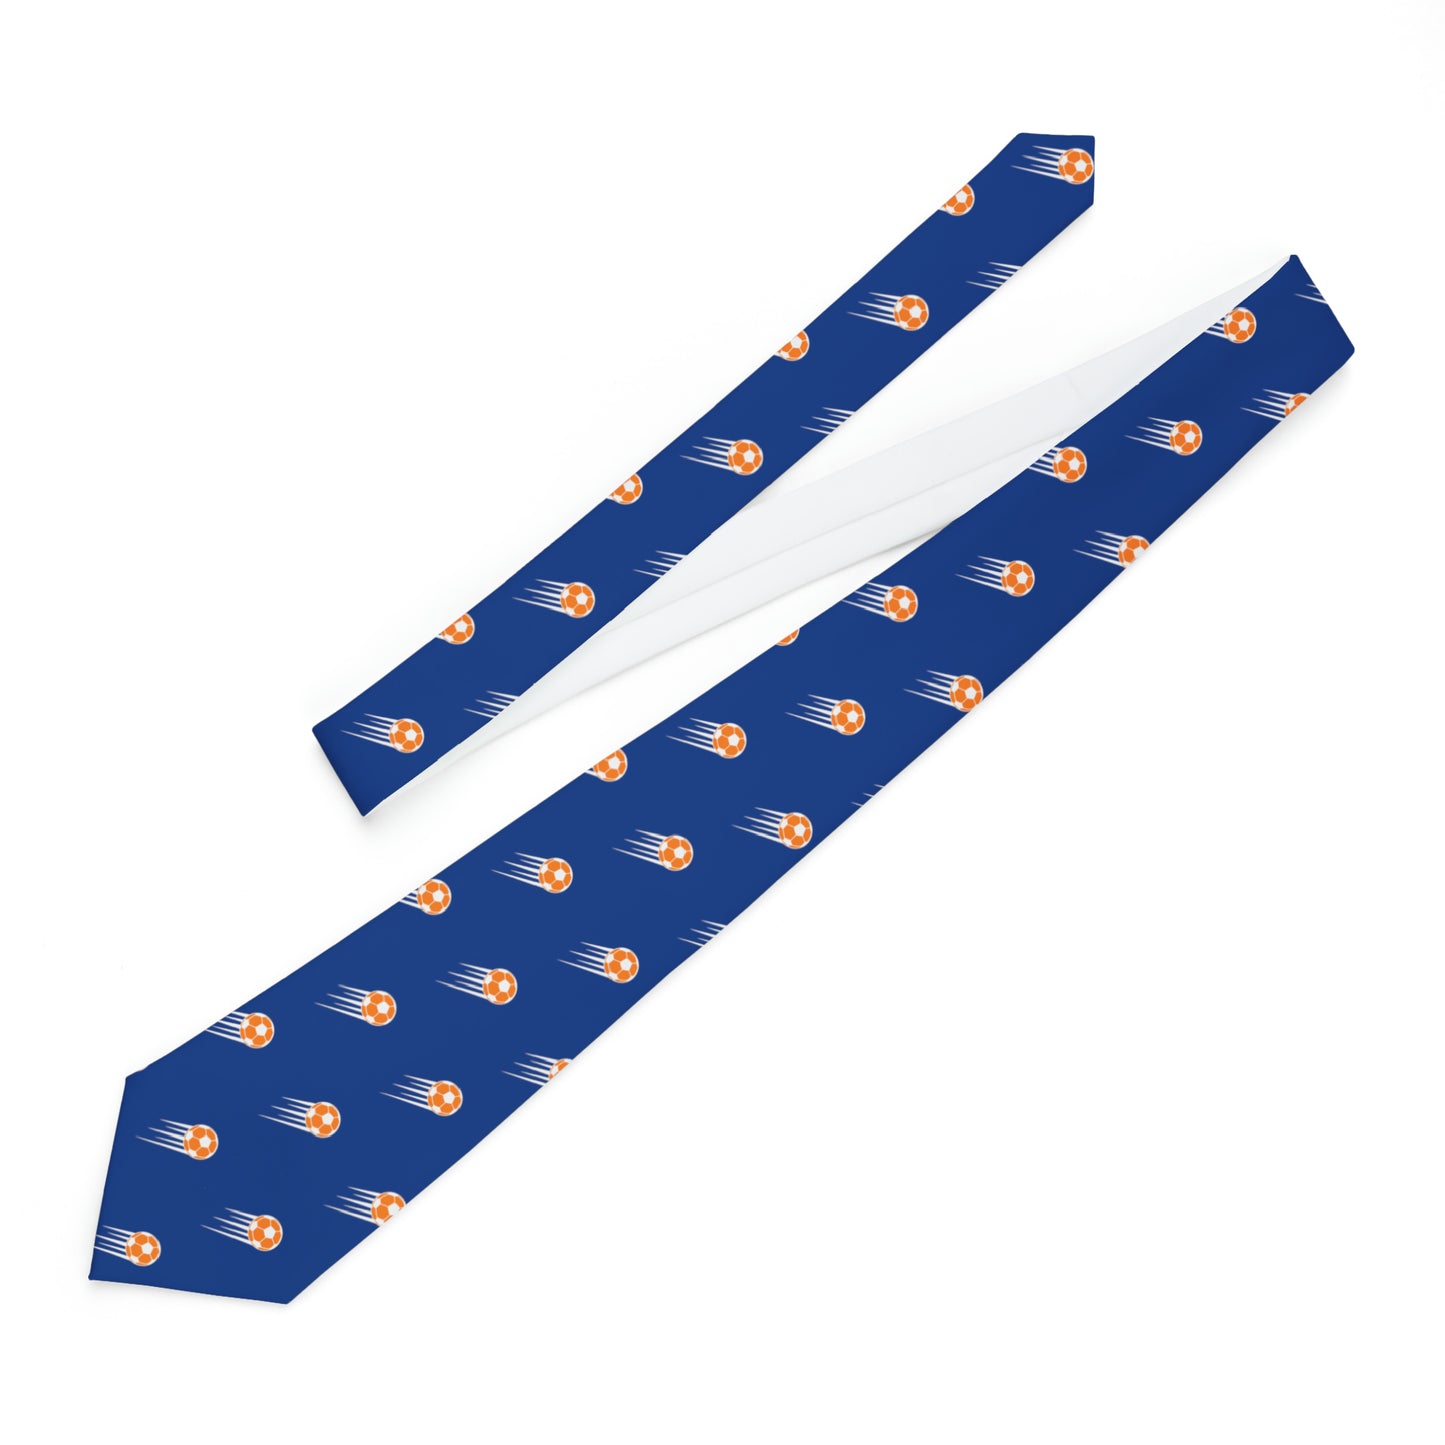 SOCCER Necktie, Orange and Blue